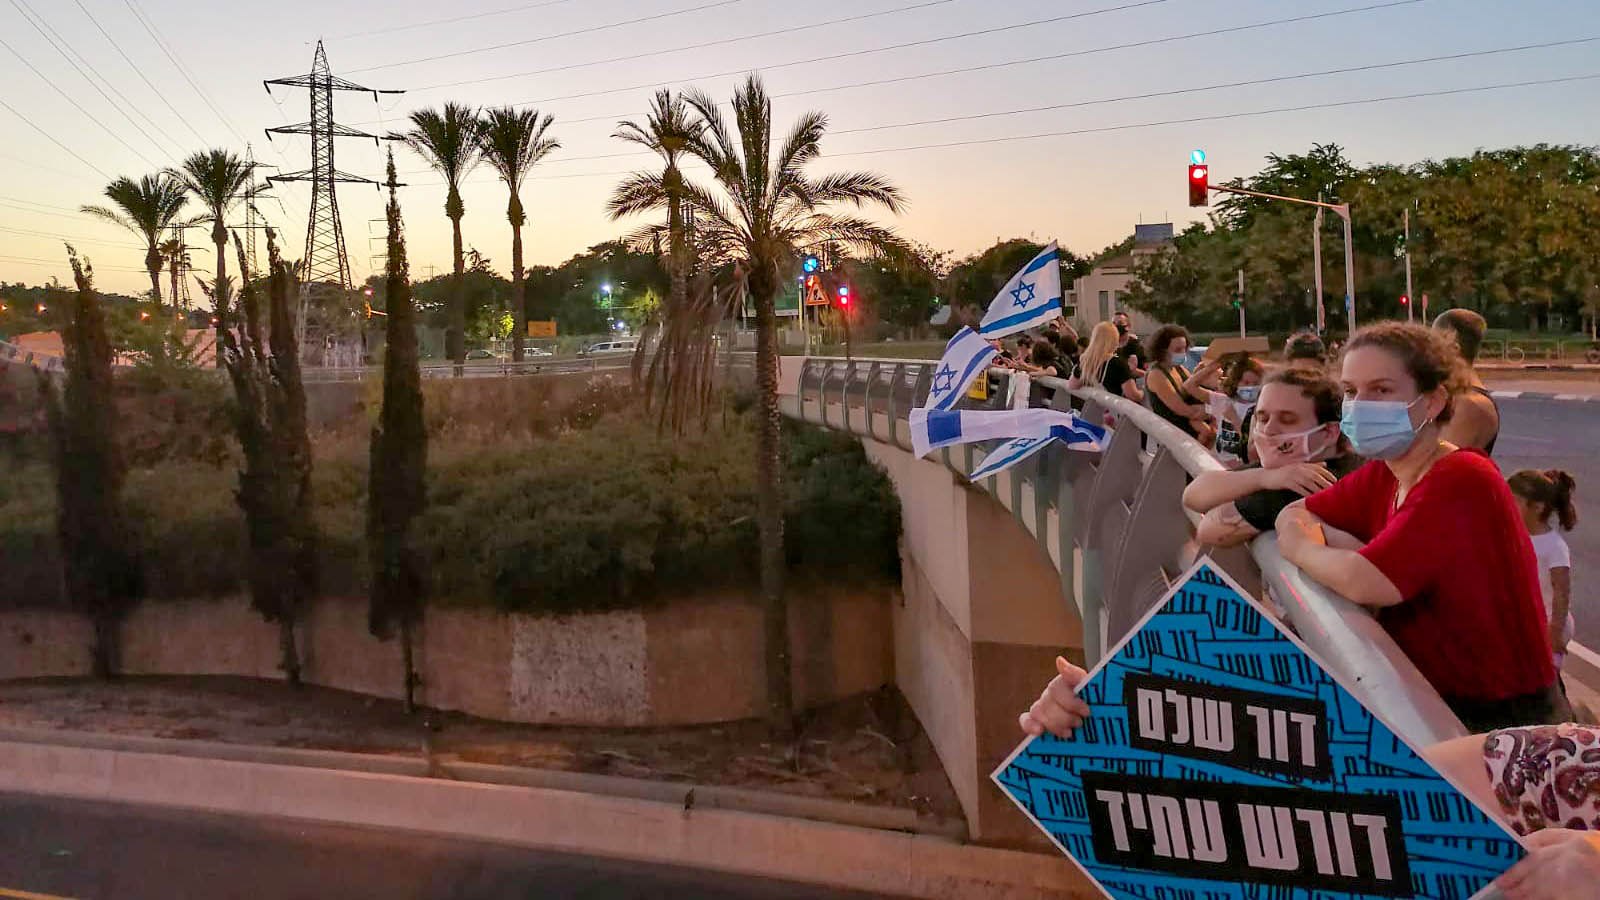 הפגנה במחלף וולפסון בתל אביב (צילום: חן עקיקי)